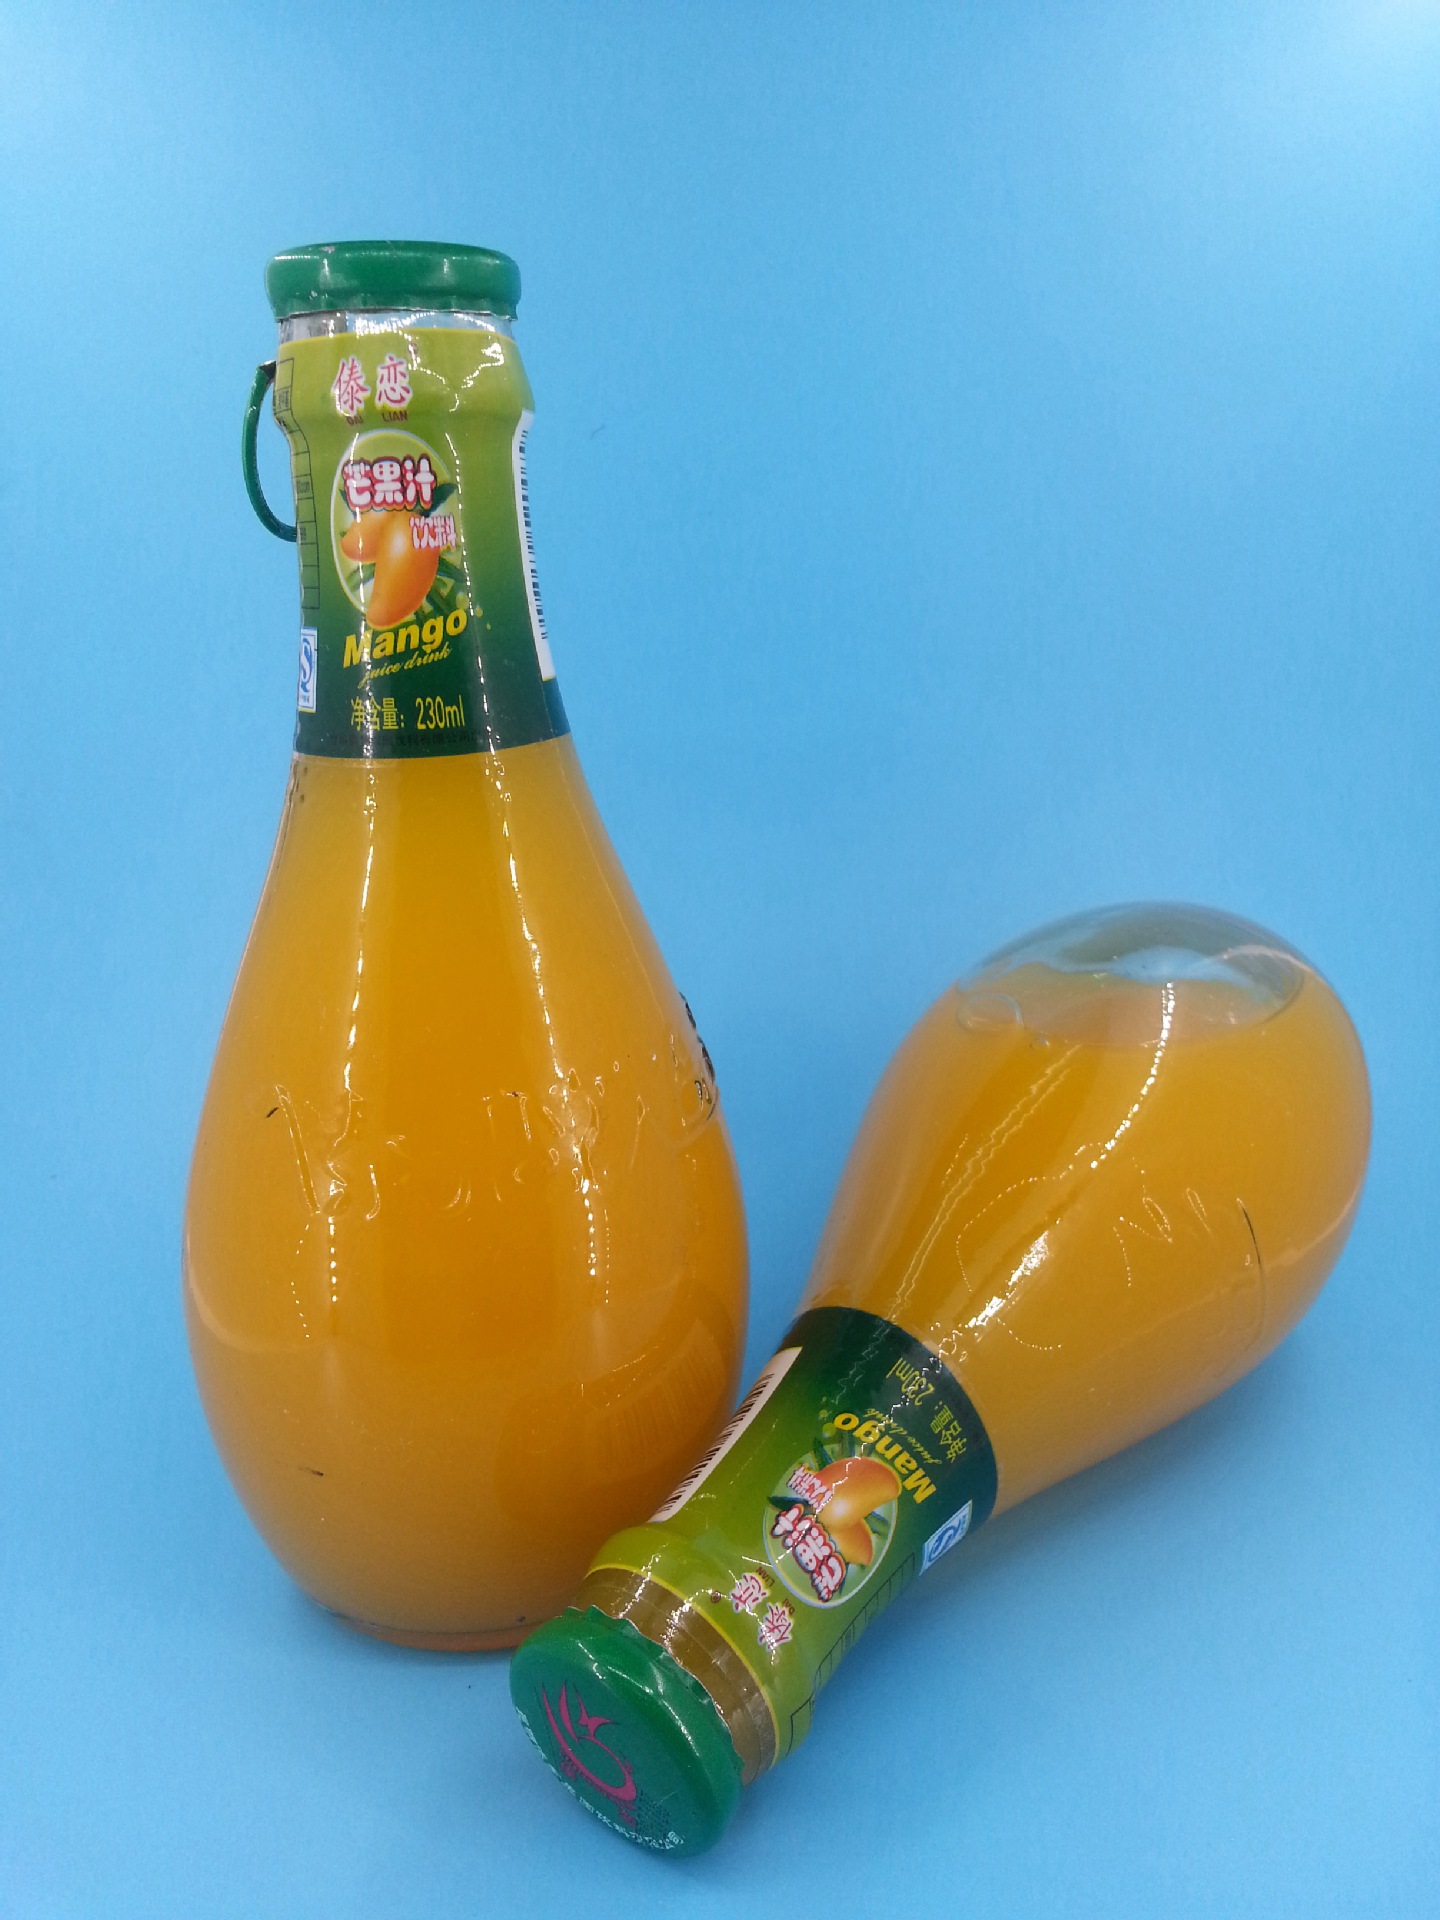 230ml玻璃瓶 拉环盖手雷型 30%含量云南原生态 芒果汁饮料代理